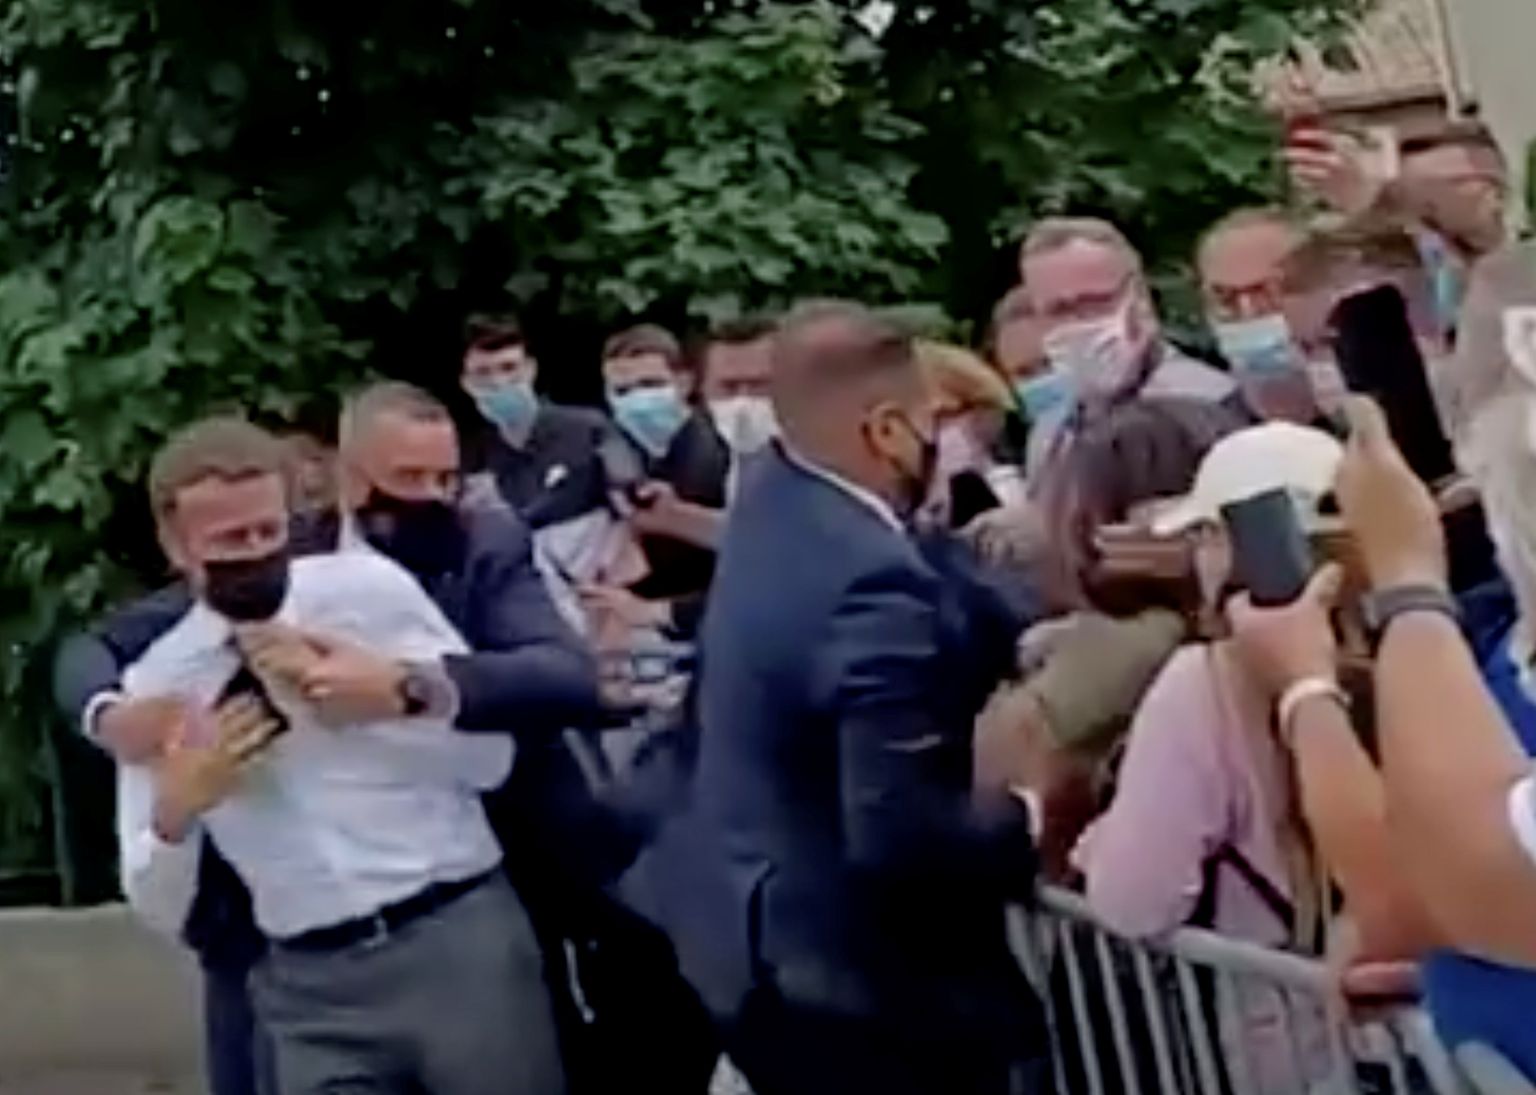 Kaader videost, millel on näha Prantsuse presidenti Emmanuel Macroni 8. juunil külastamas Tain-L'Hermitage'i, kus rahva seas olnu lõi teda näkku. Ihukaitsjad tõmbasid Macroni eemale